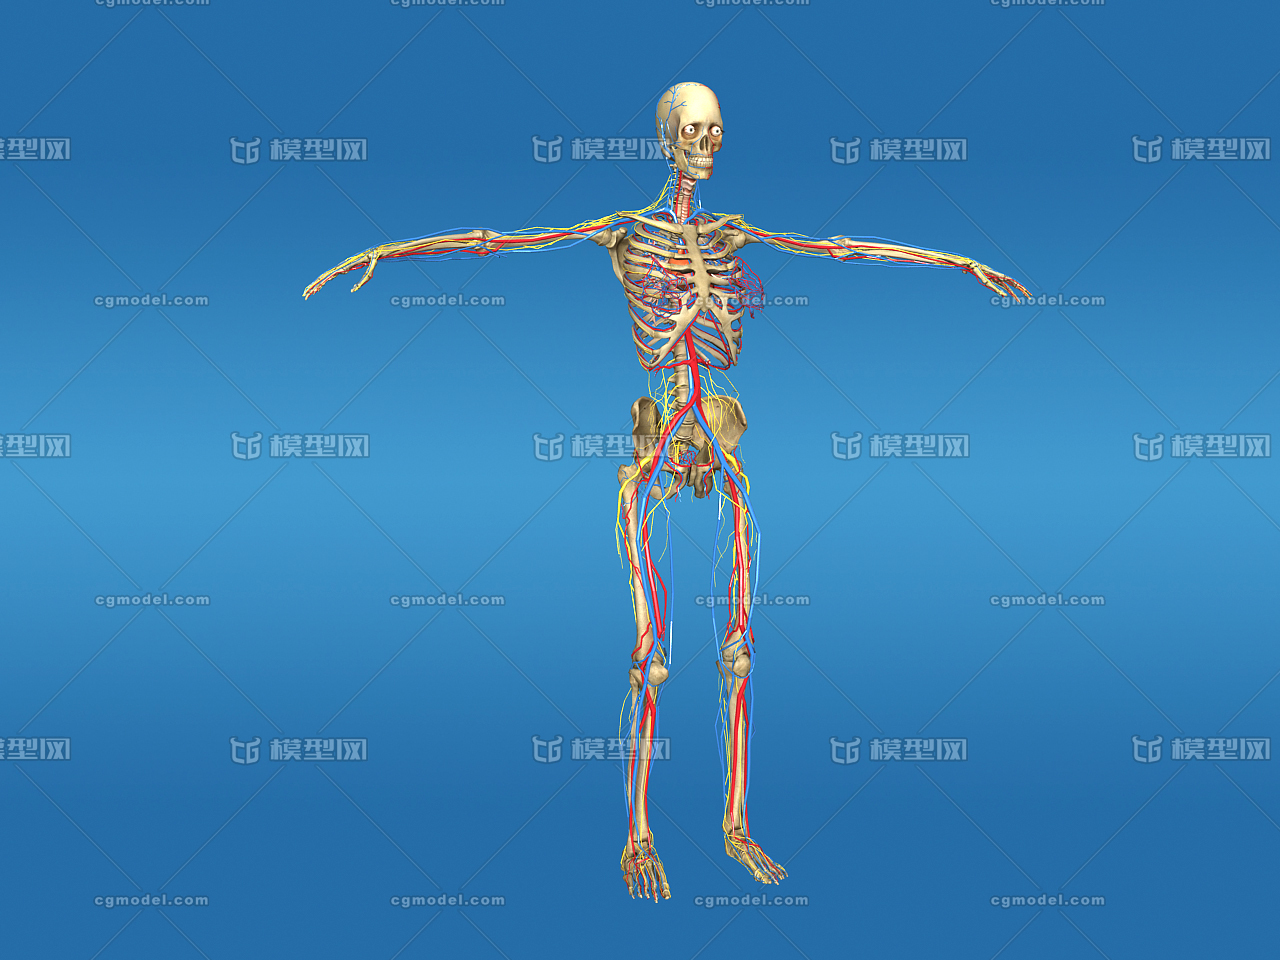 医学动画 人体透视,x射线,x光片 人体线框图 人体结构